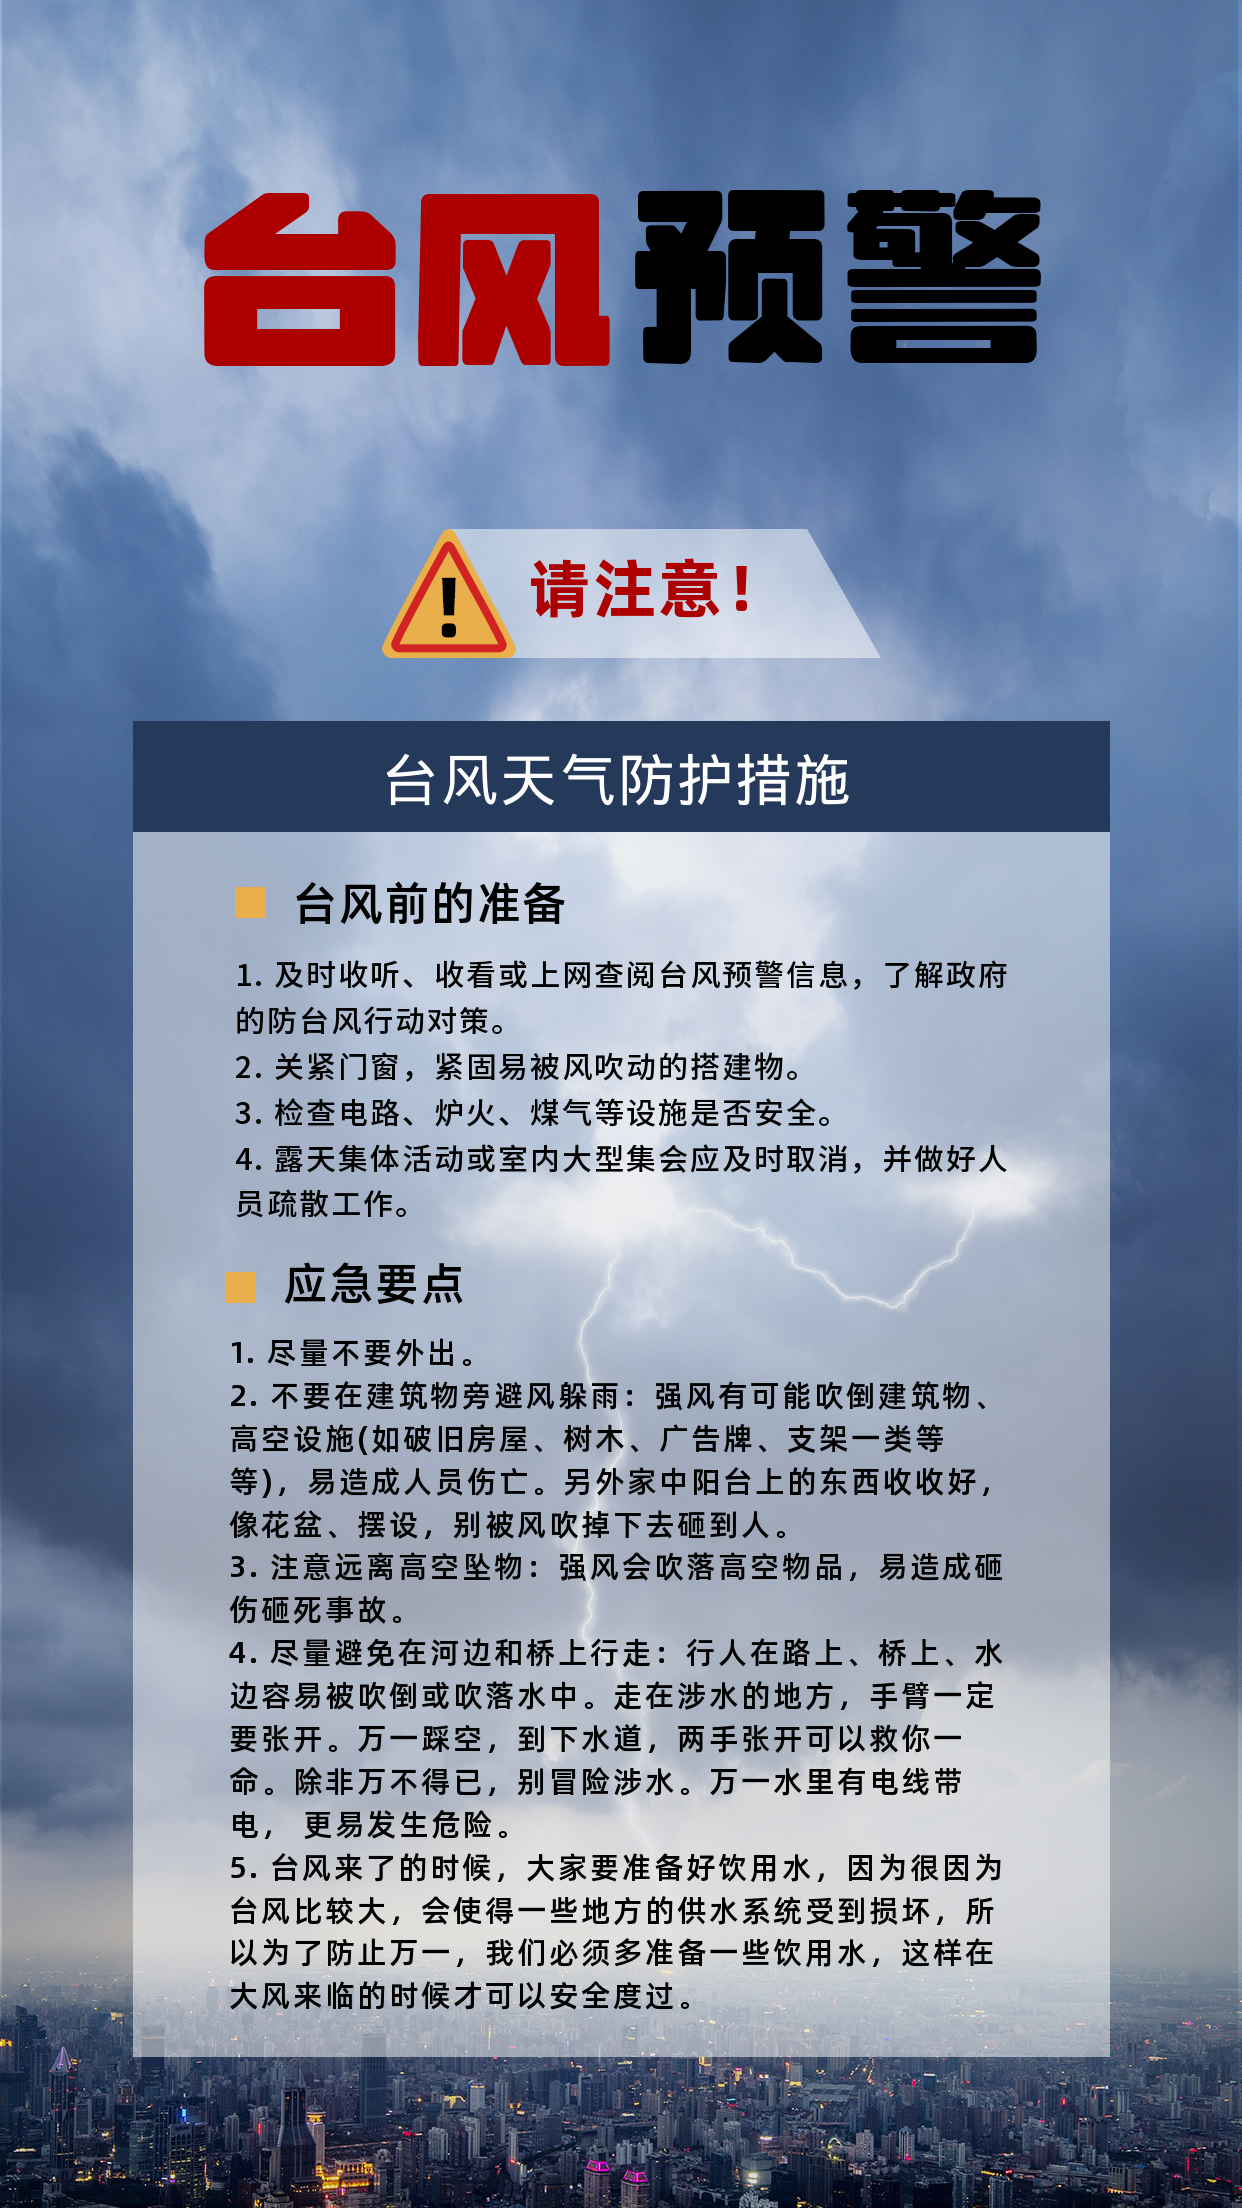 山西自然灾害暴雨天气防护知识科普手机海报